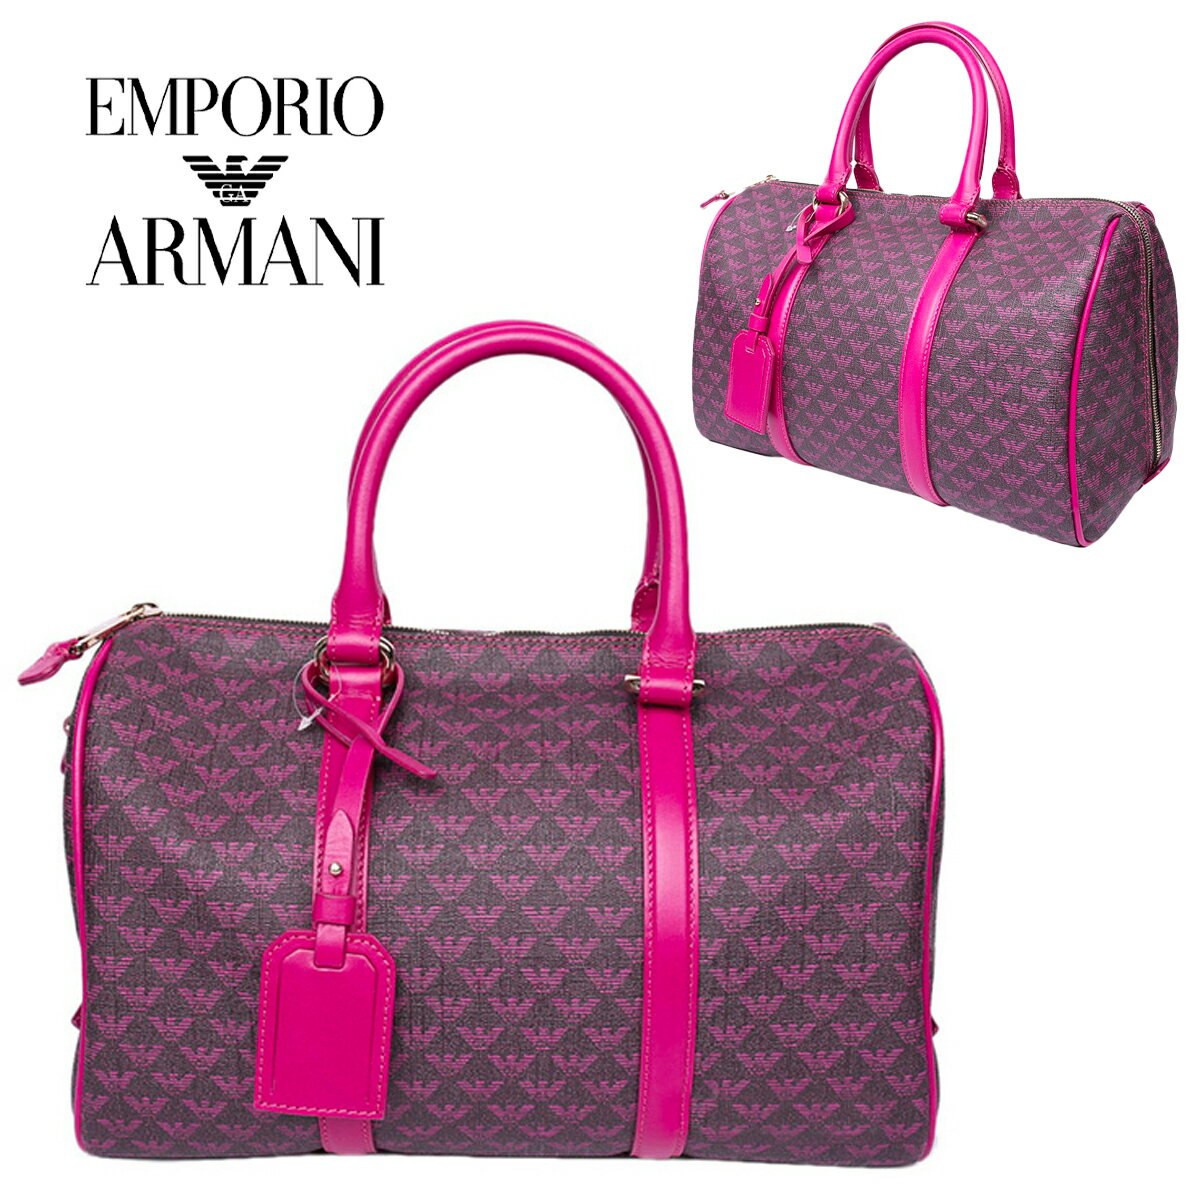 エンポリオアルマーニ EMPORIO ARMANI レディースピンクハンドバッグ YEWL98 YG835 89672 海外輸入新古品